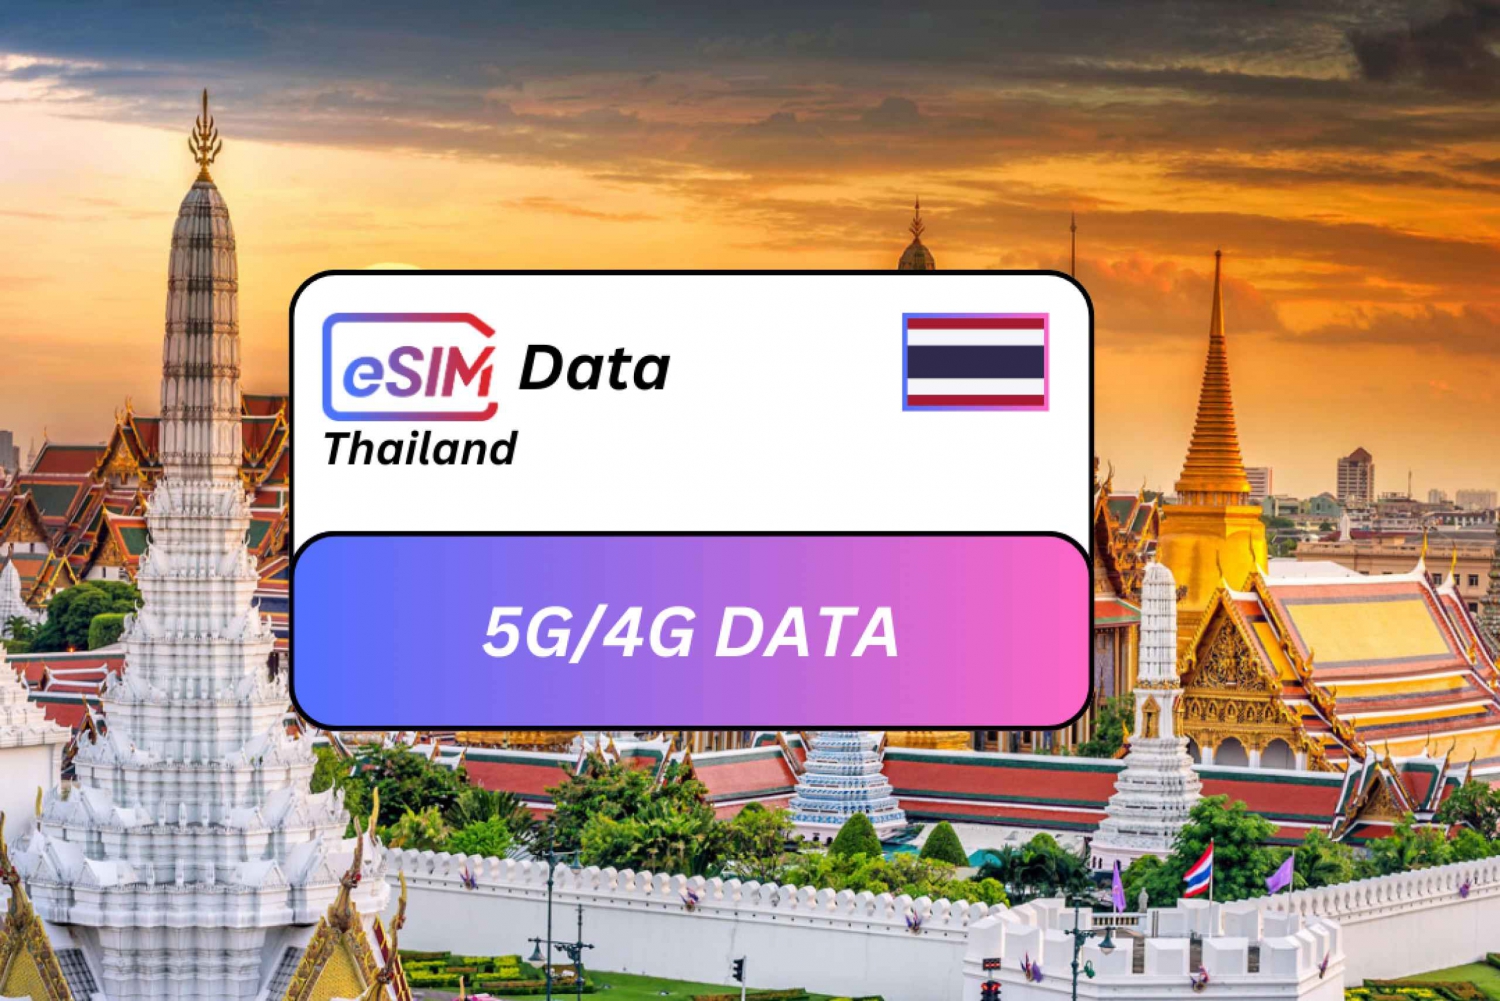 Bangkok: Thailand eSIM Roaming Data Plan